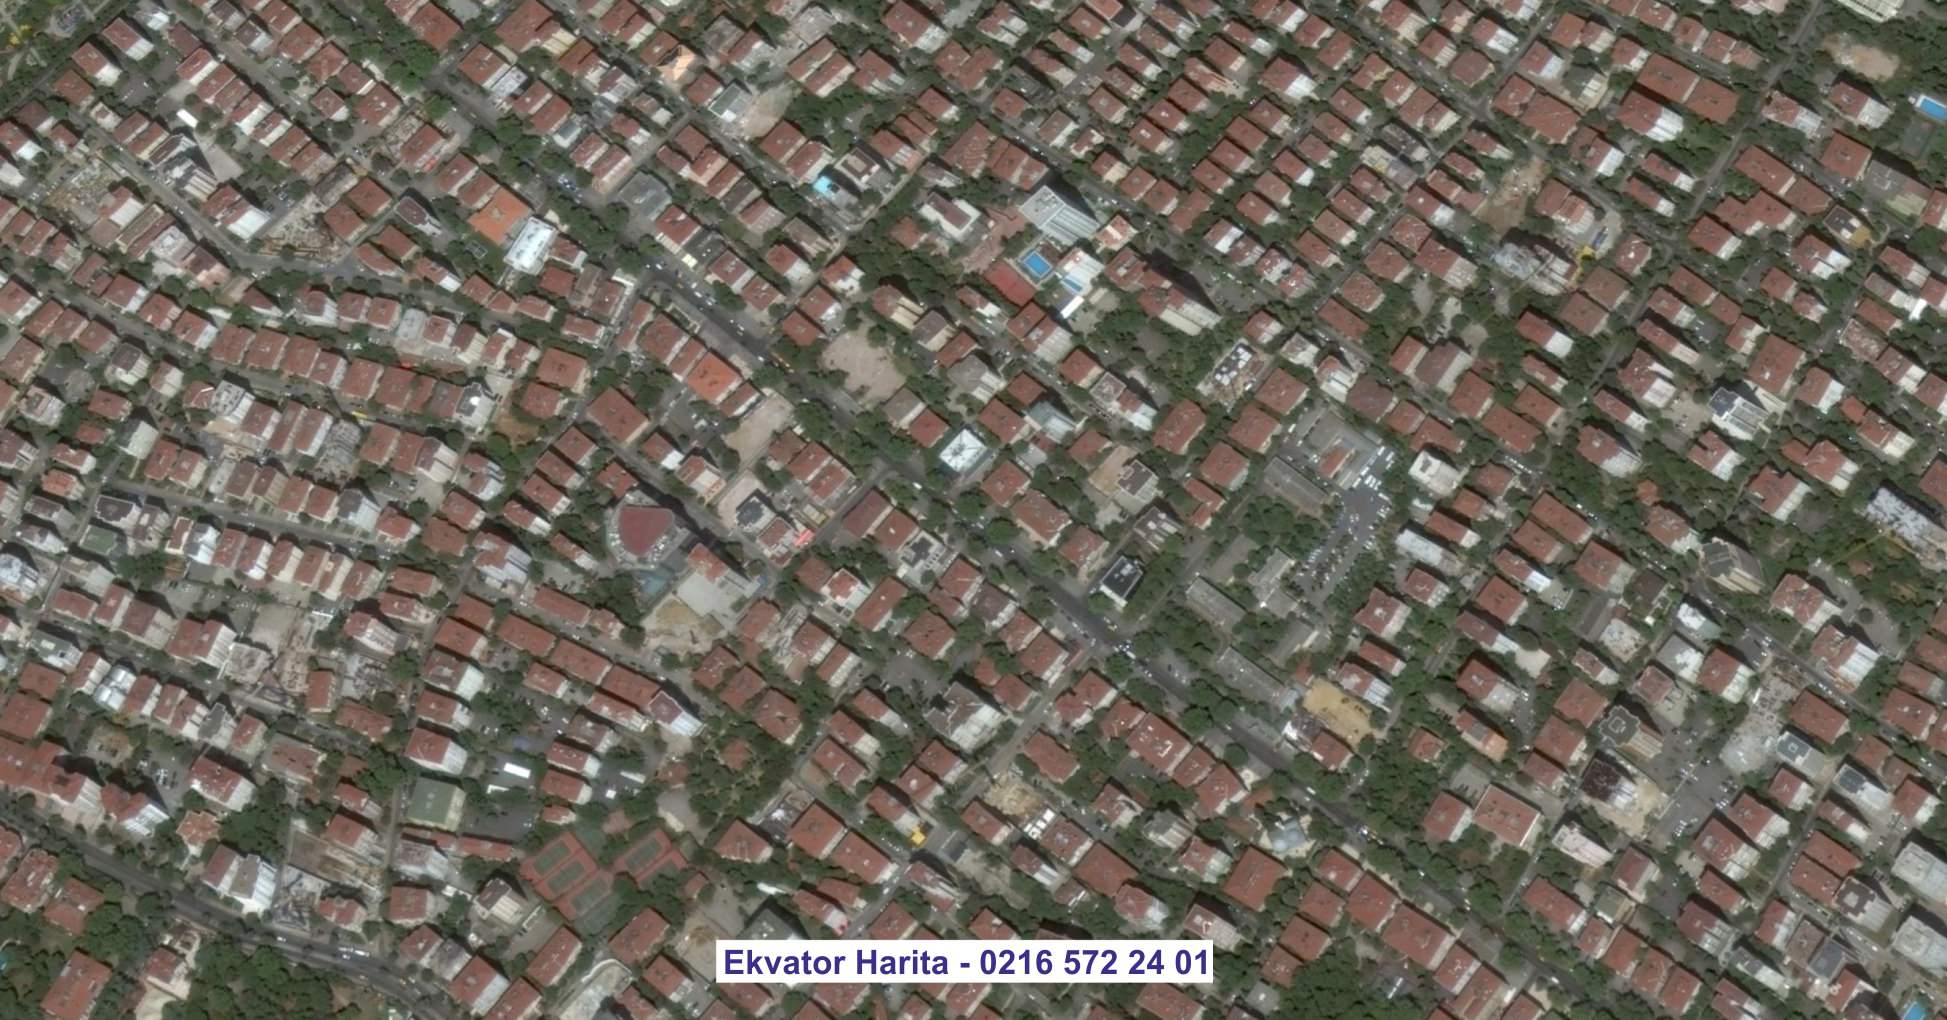 Mardin Uydu Görüntüsü Örnek Fotoğrafı